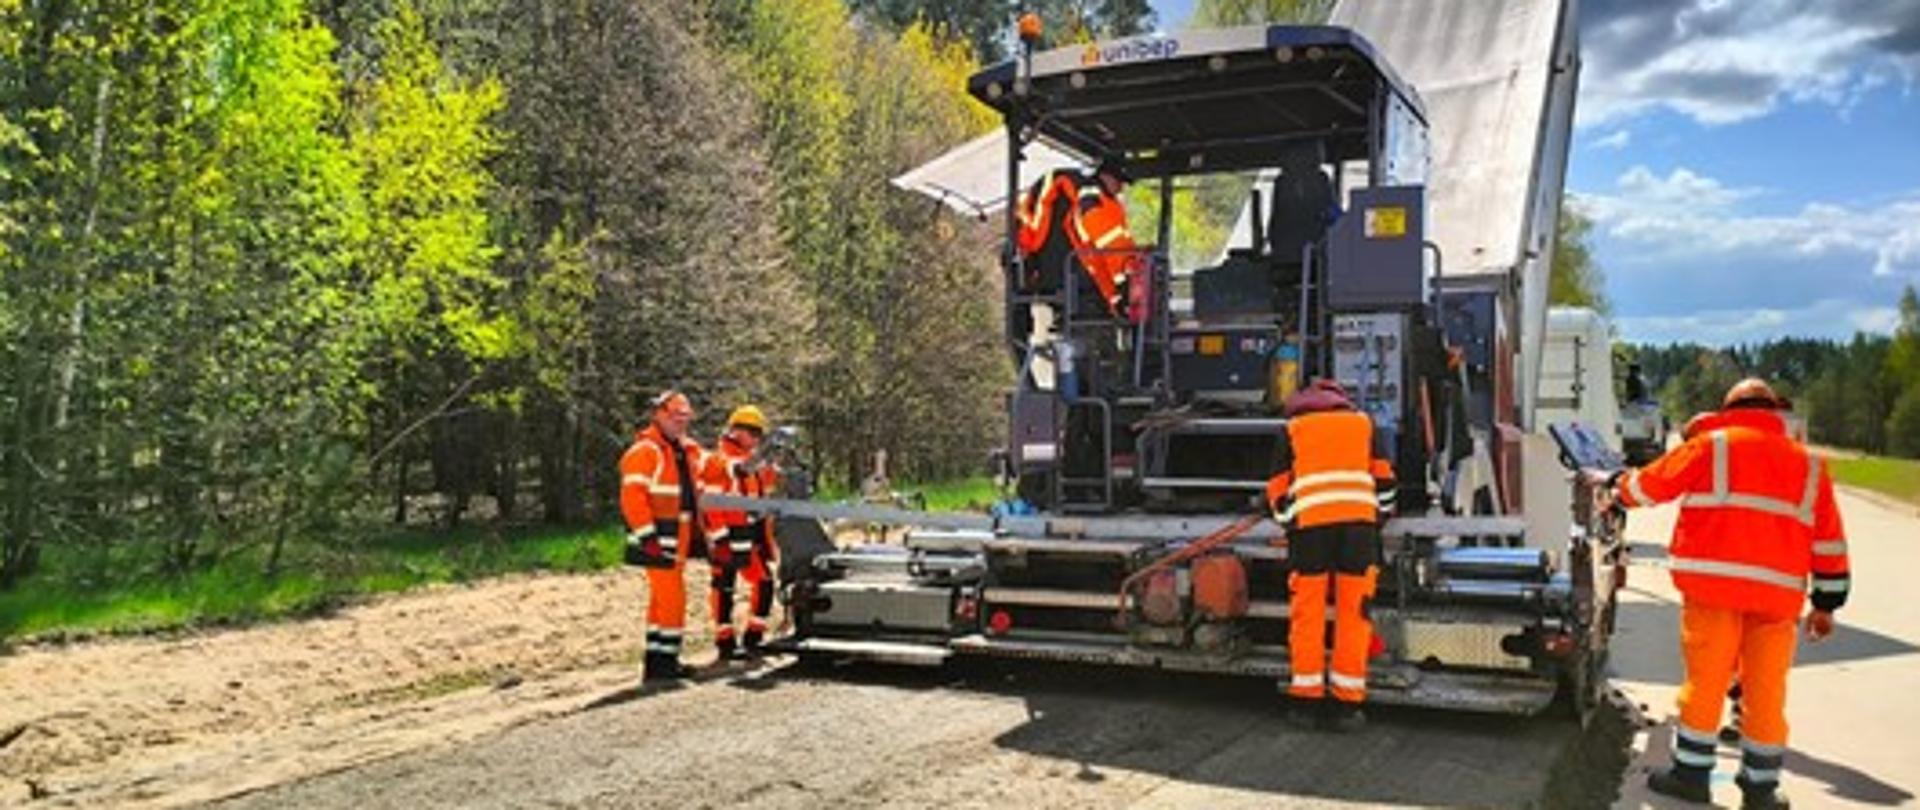 Czterech pracowników drogowych rozkłada mieszankę mineralno- cementową z asfaltem. Operator siedzi na maszynie do rozlewania mieszanki. Zdjęcie jasne zrobione przy słonecznej pogodzie,